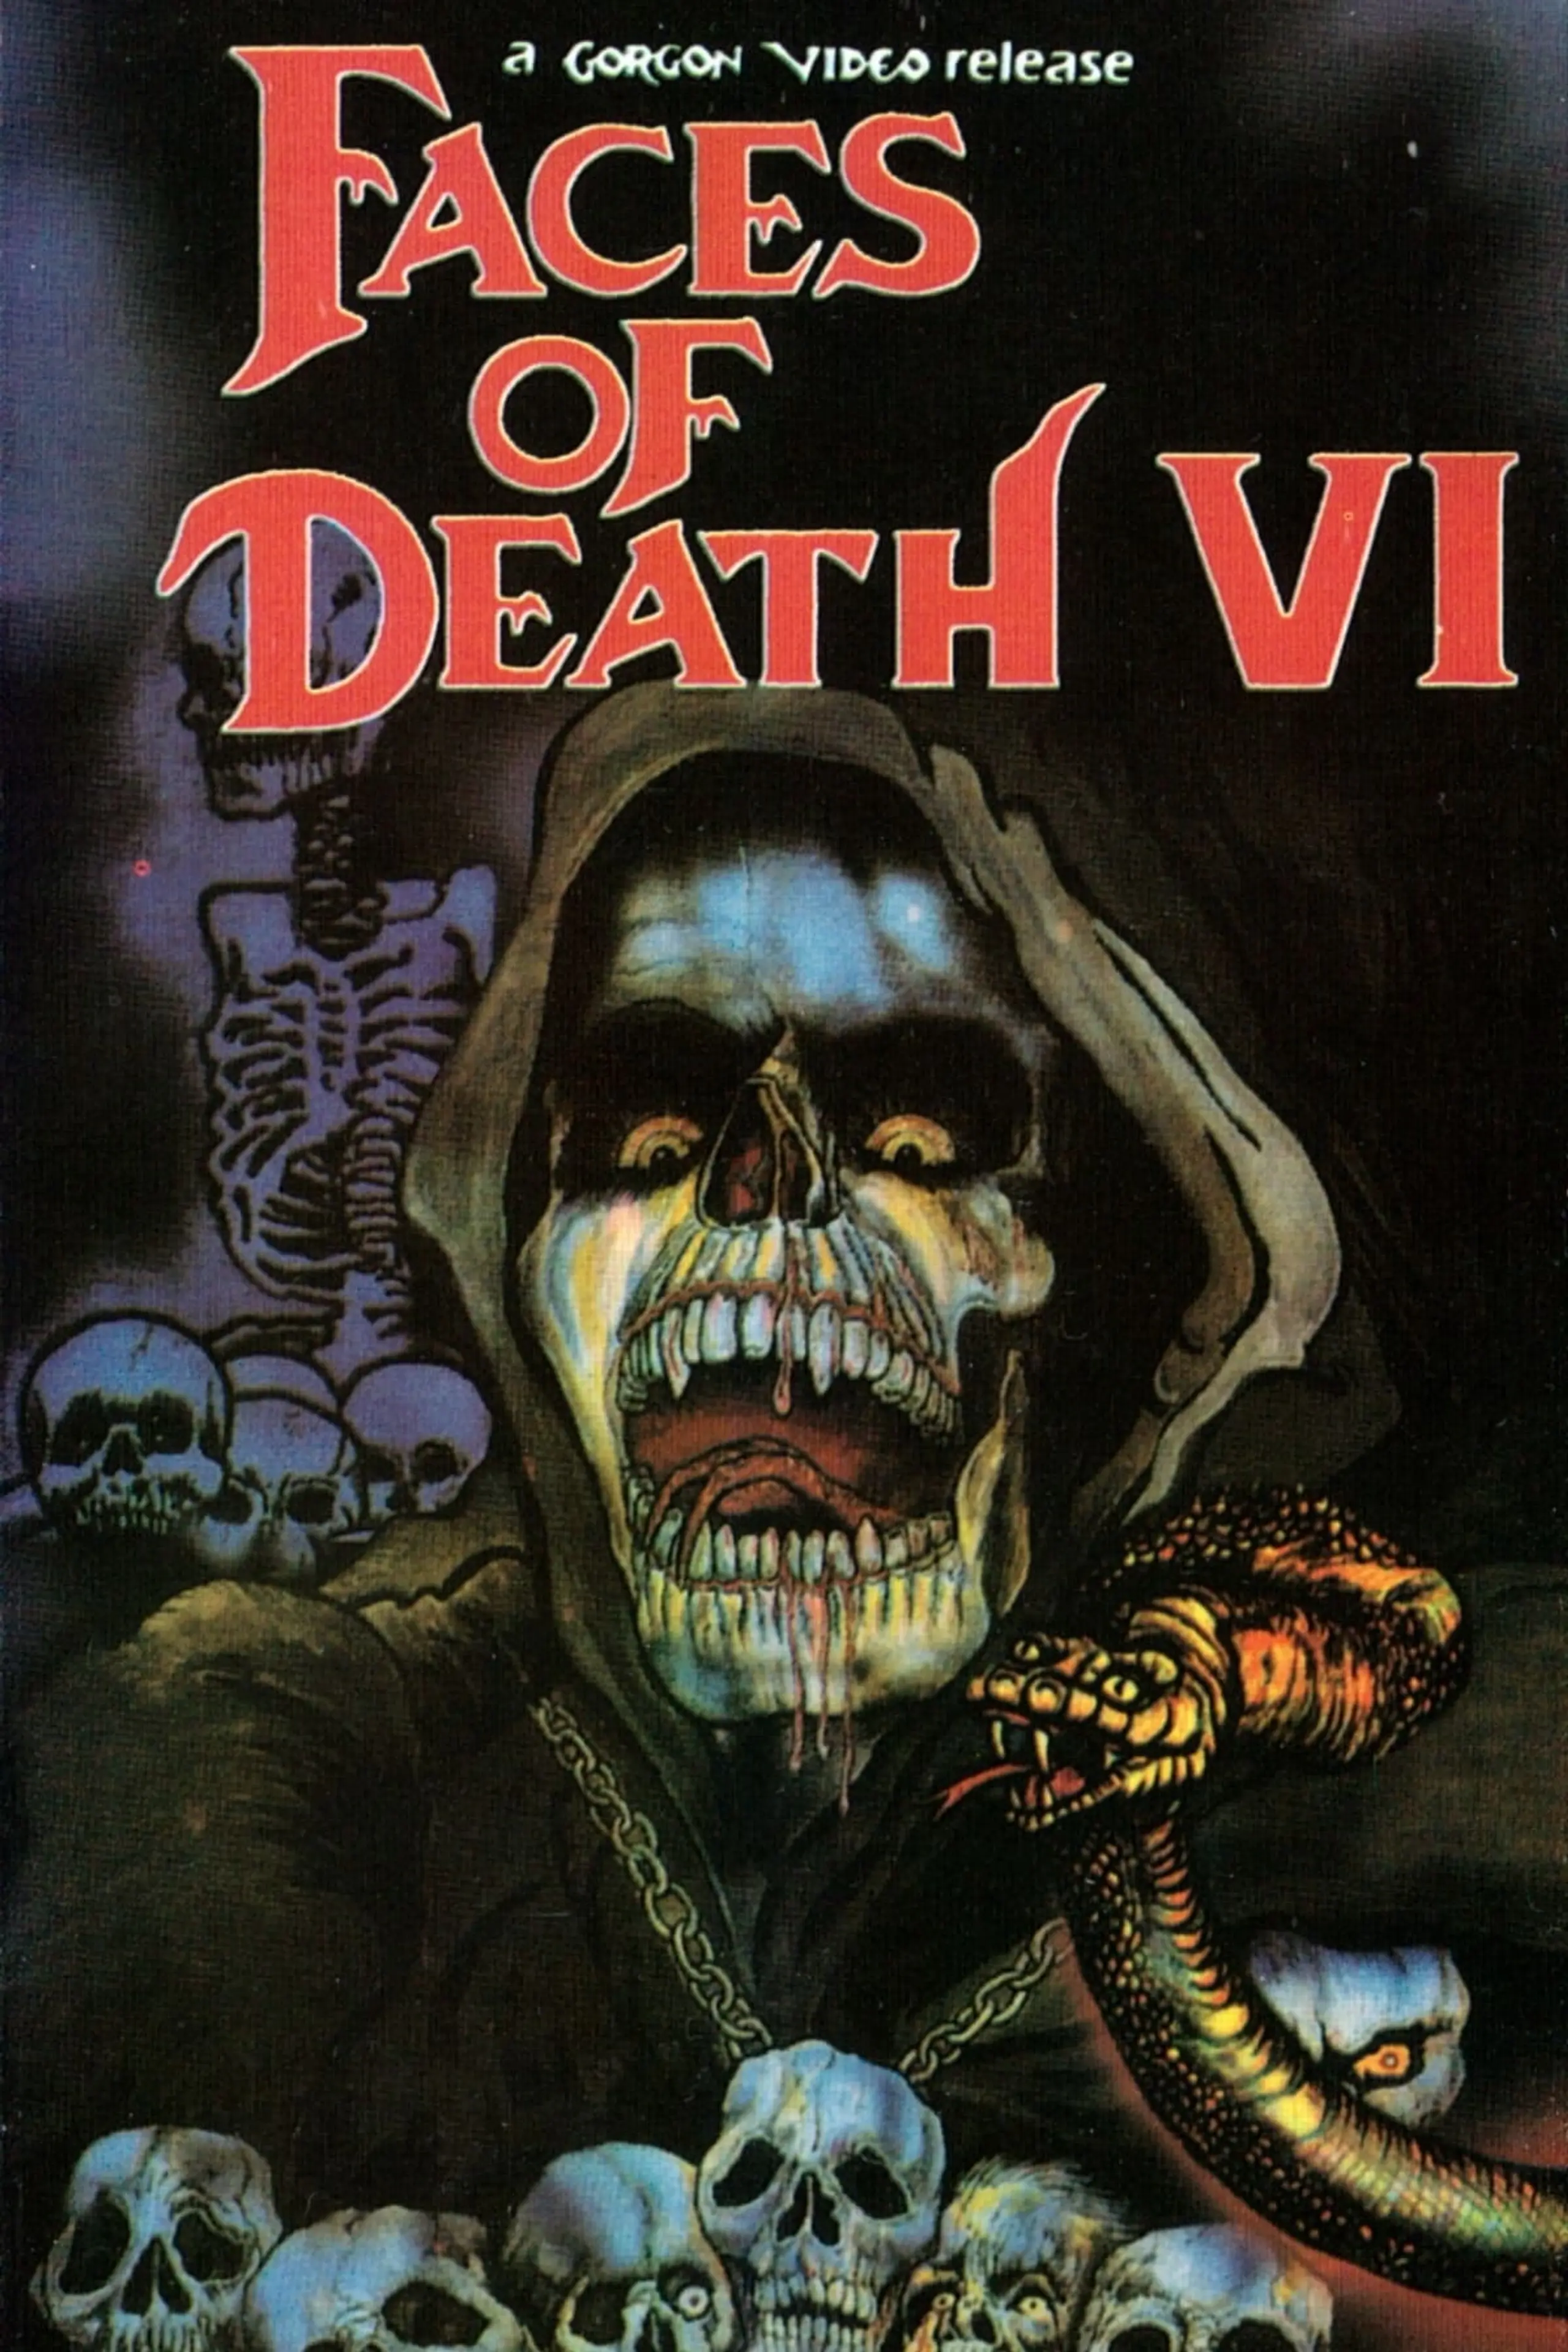 Gesichter des Todes VI